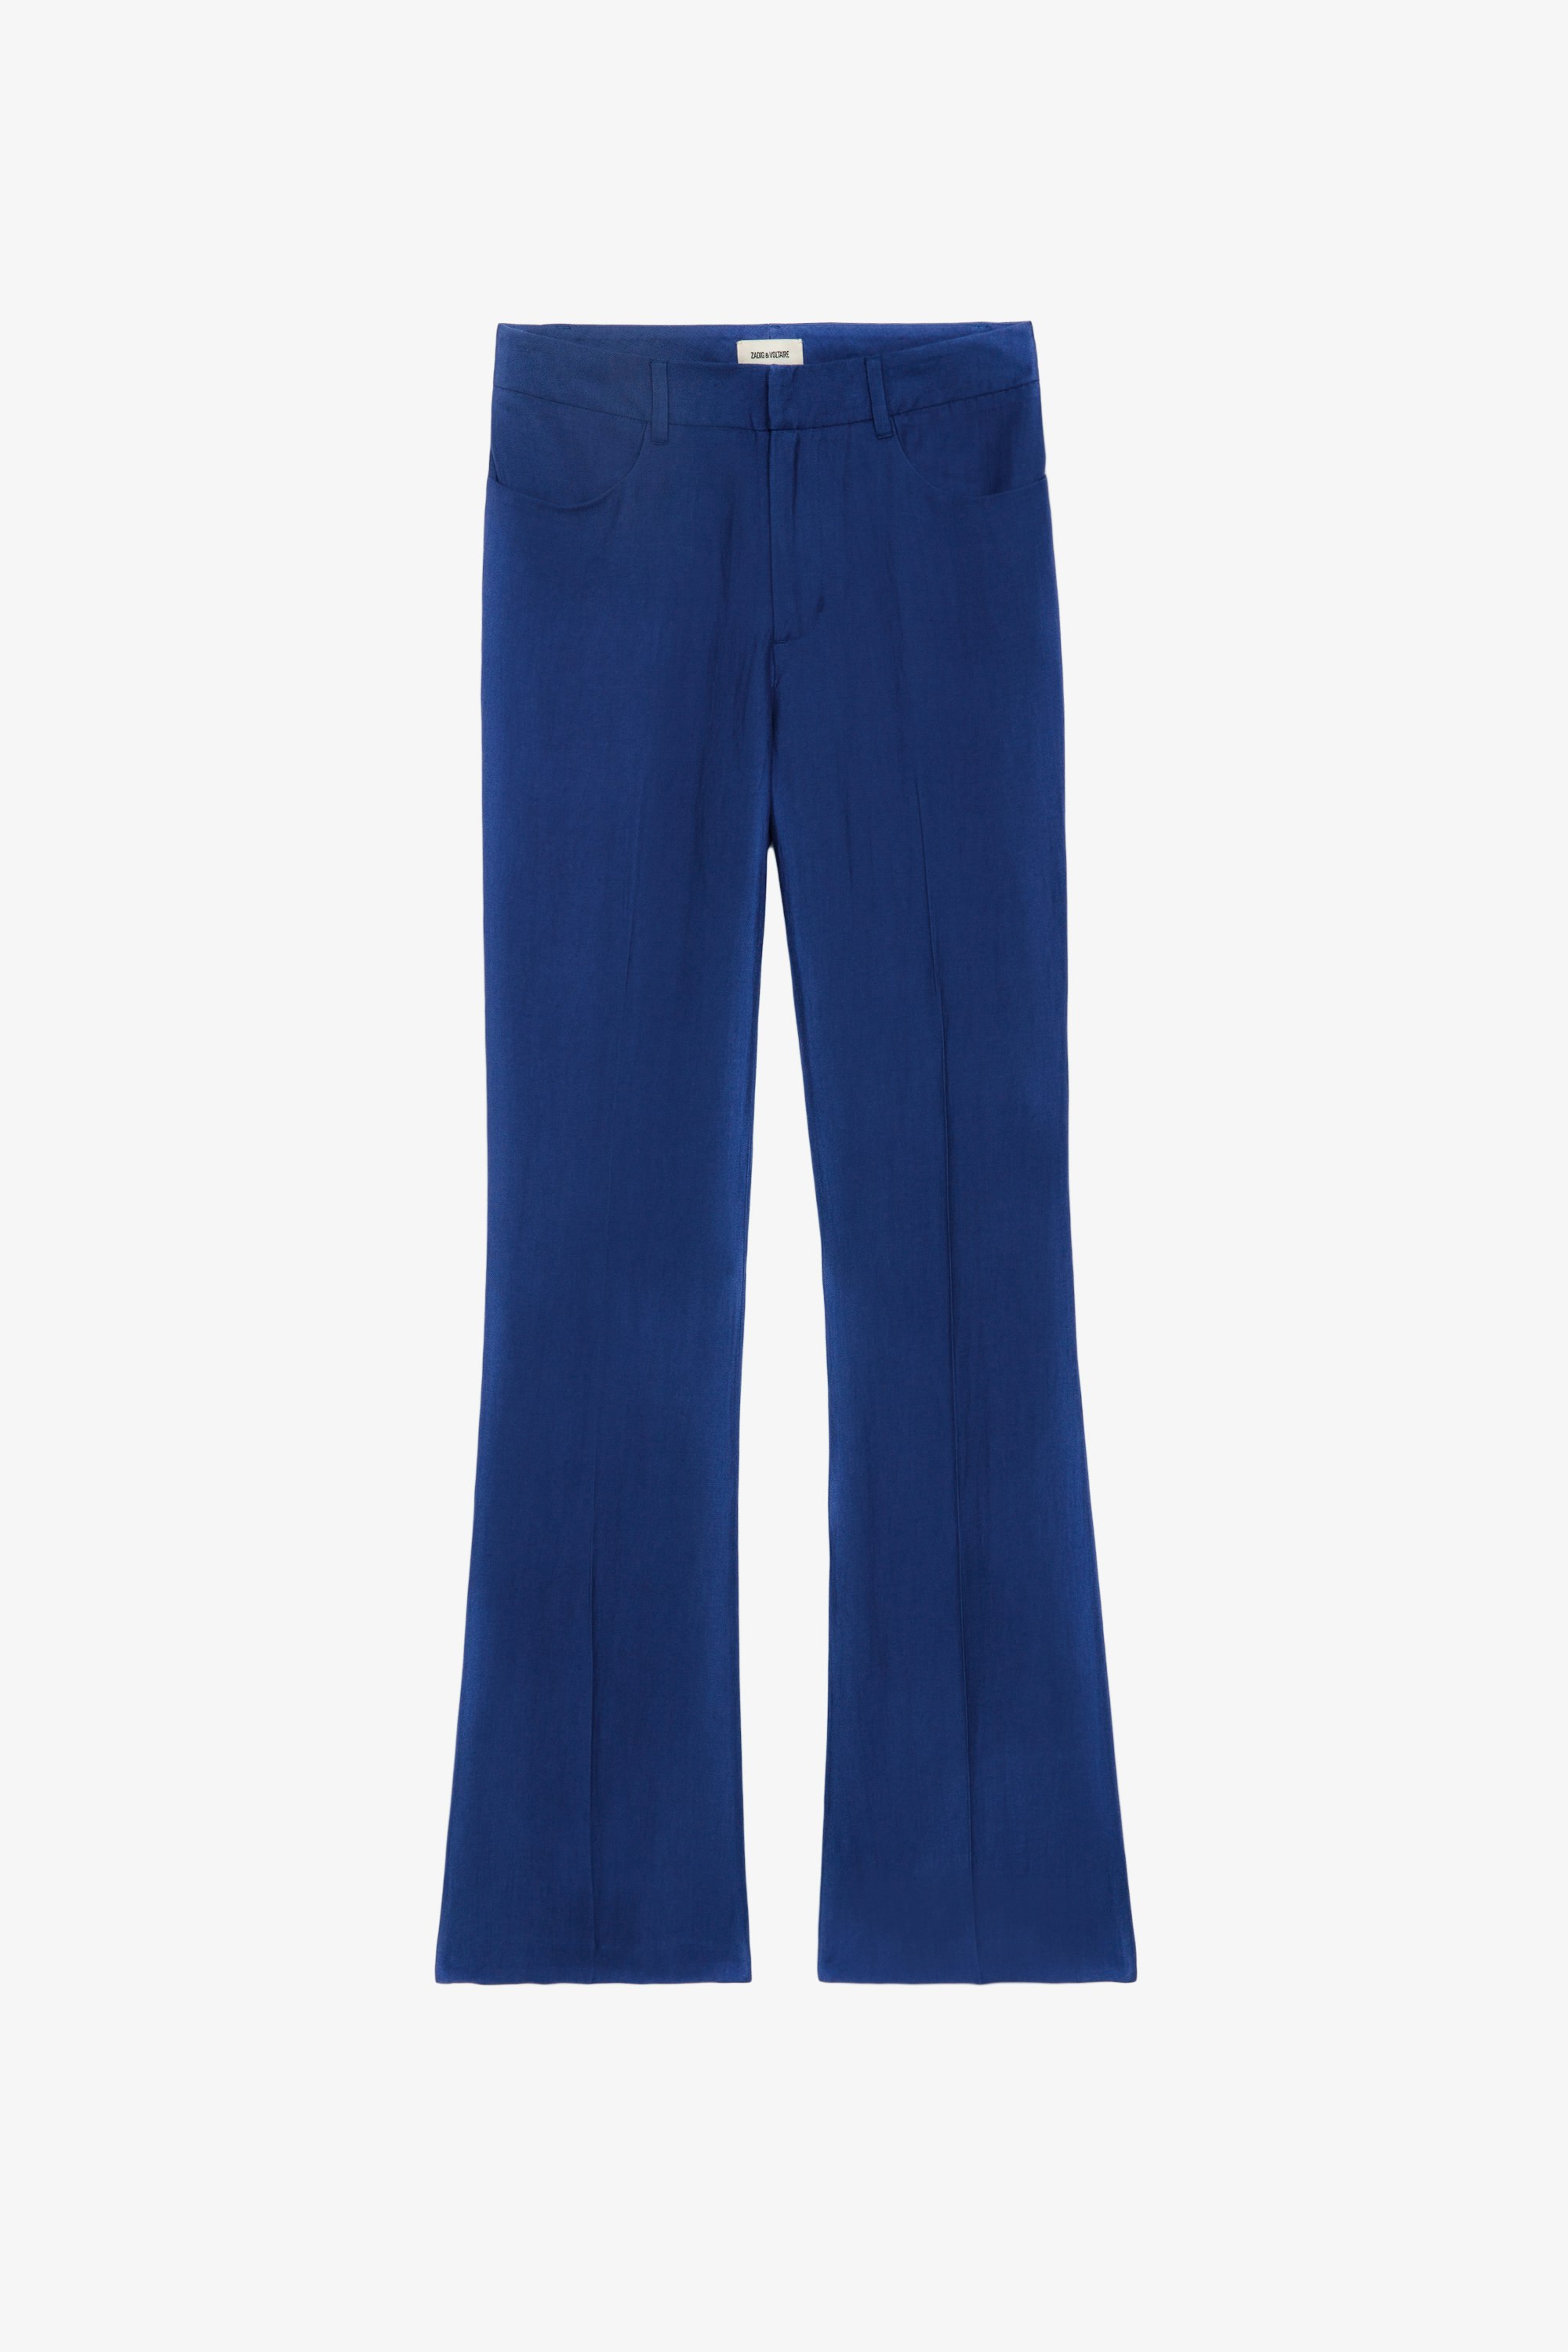 Pantalón Pistol - Pantalón de traje acampanado de lino en color azul con bolsillos y plisado.